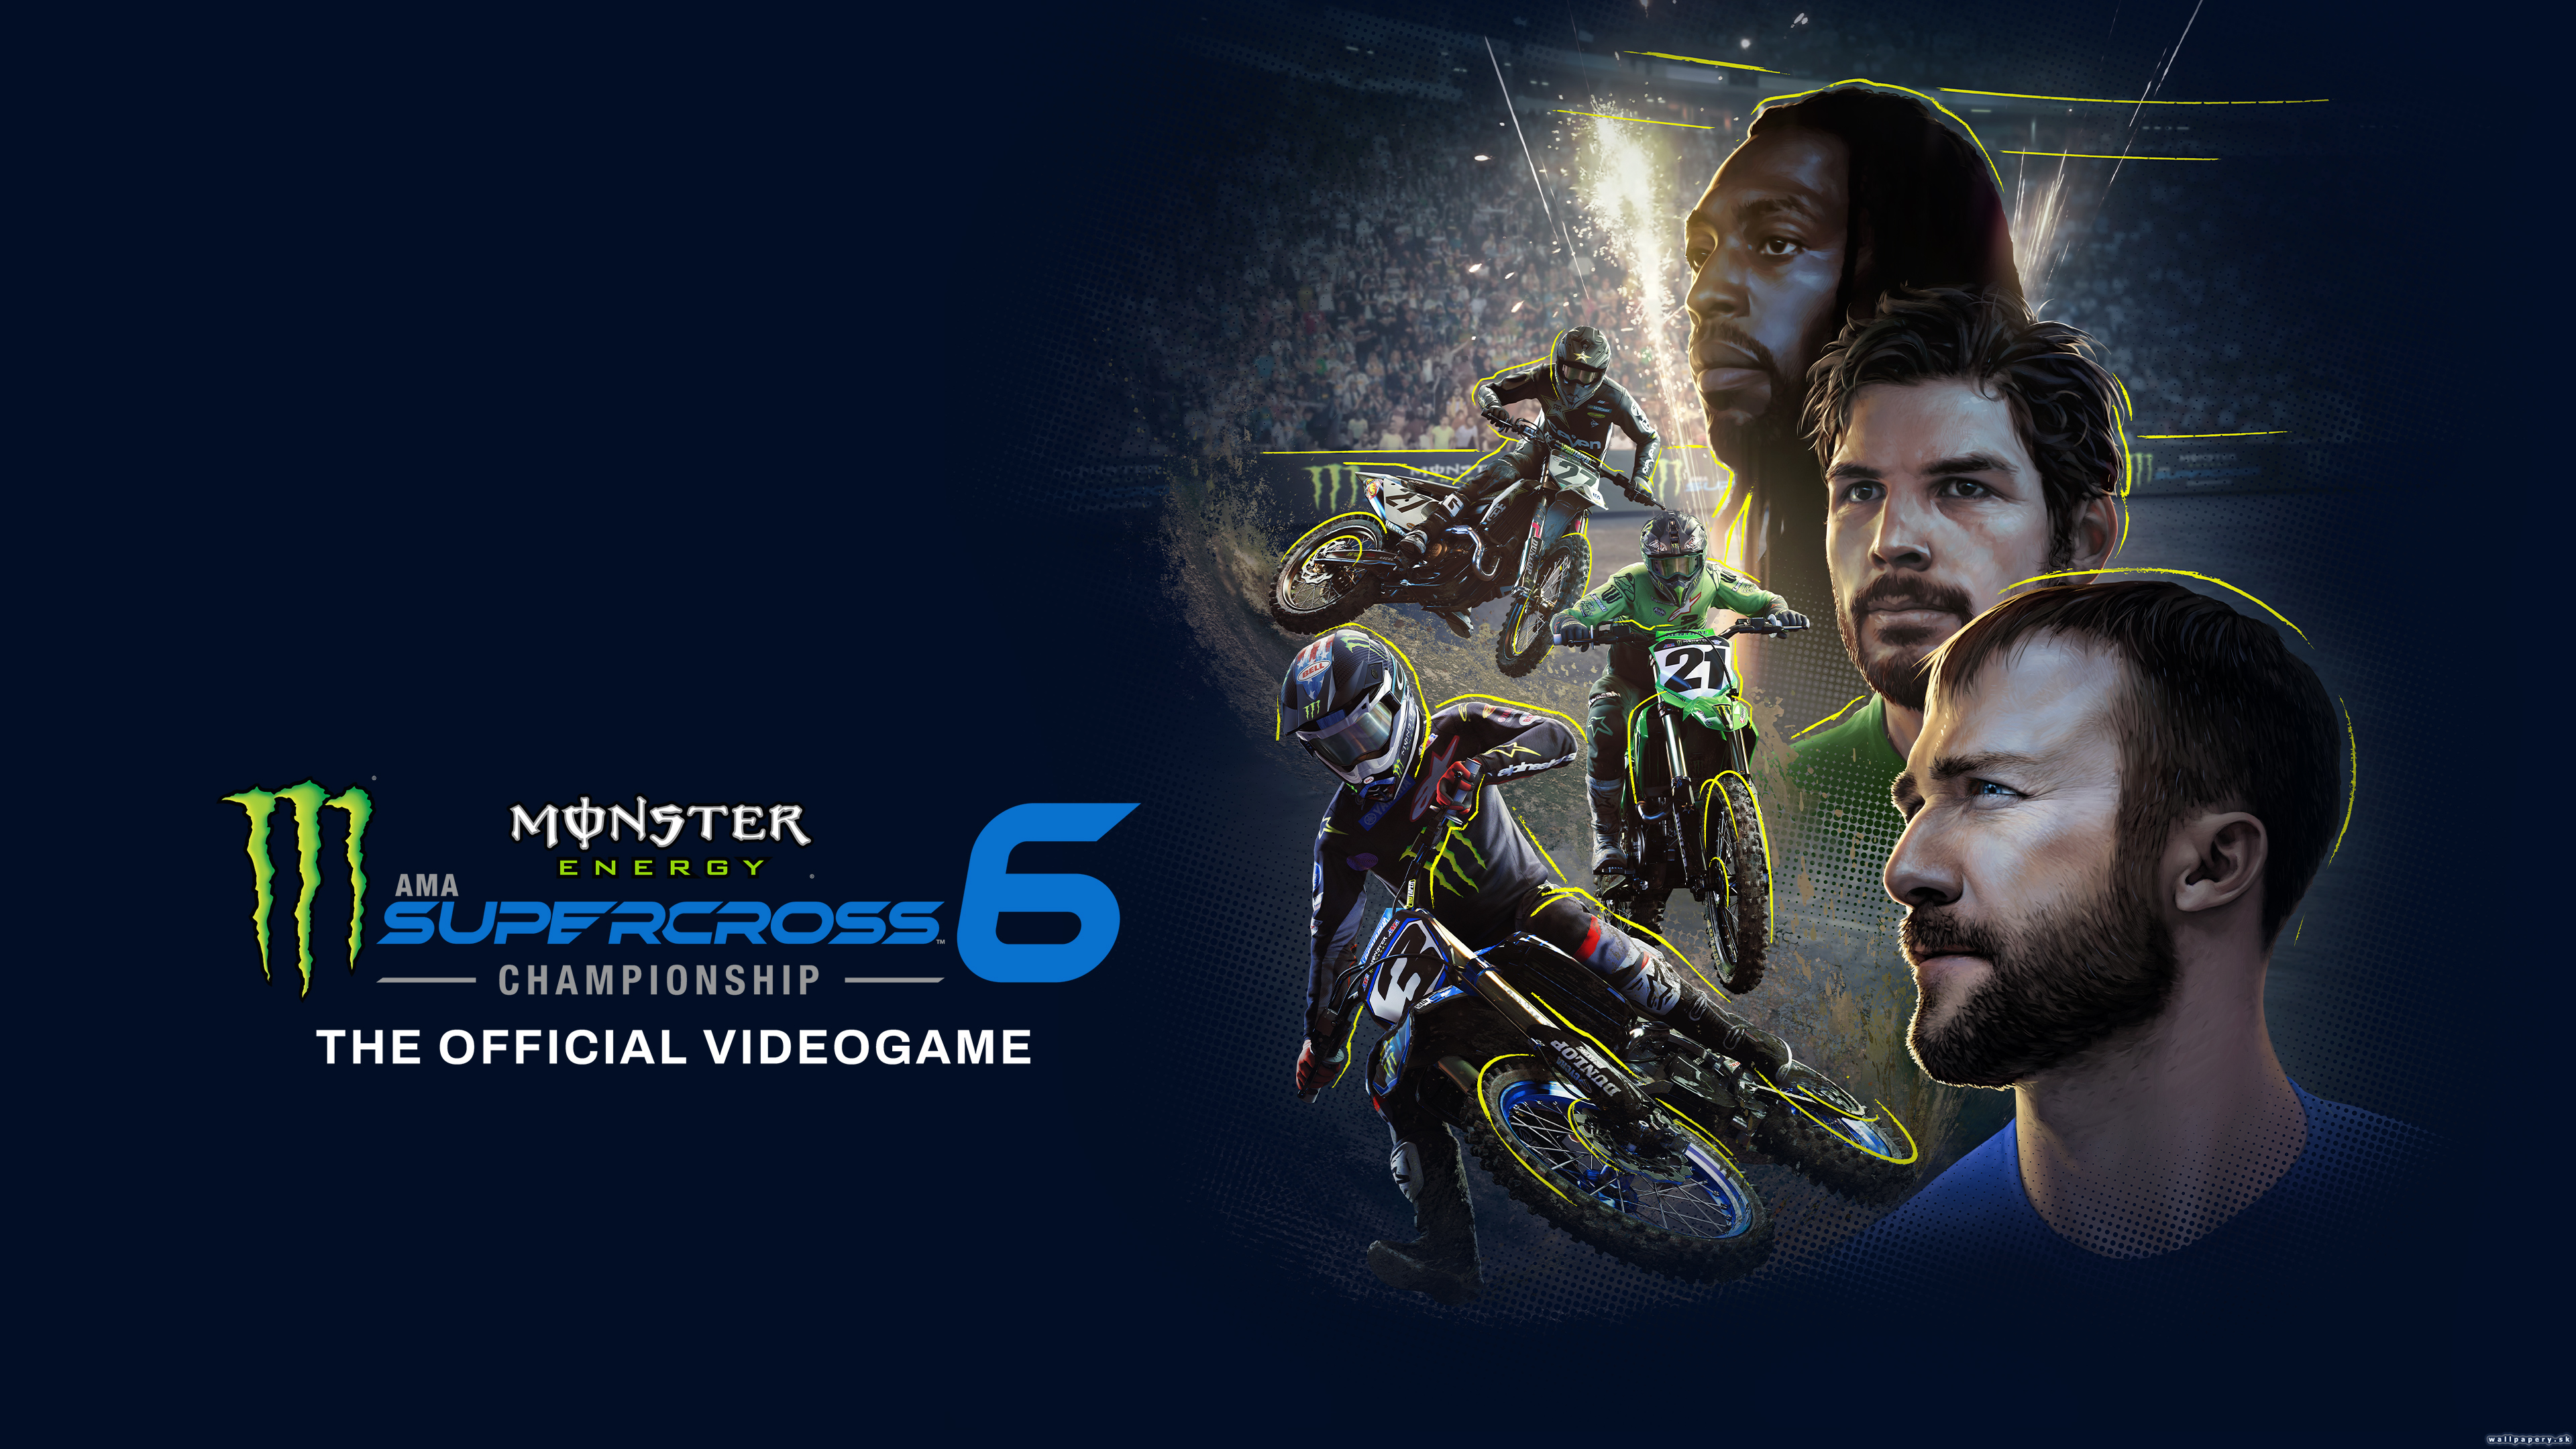 Monster Energy Supercross 6 - The Official Videogame - wallpaper 1